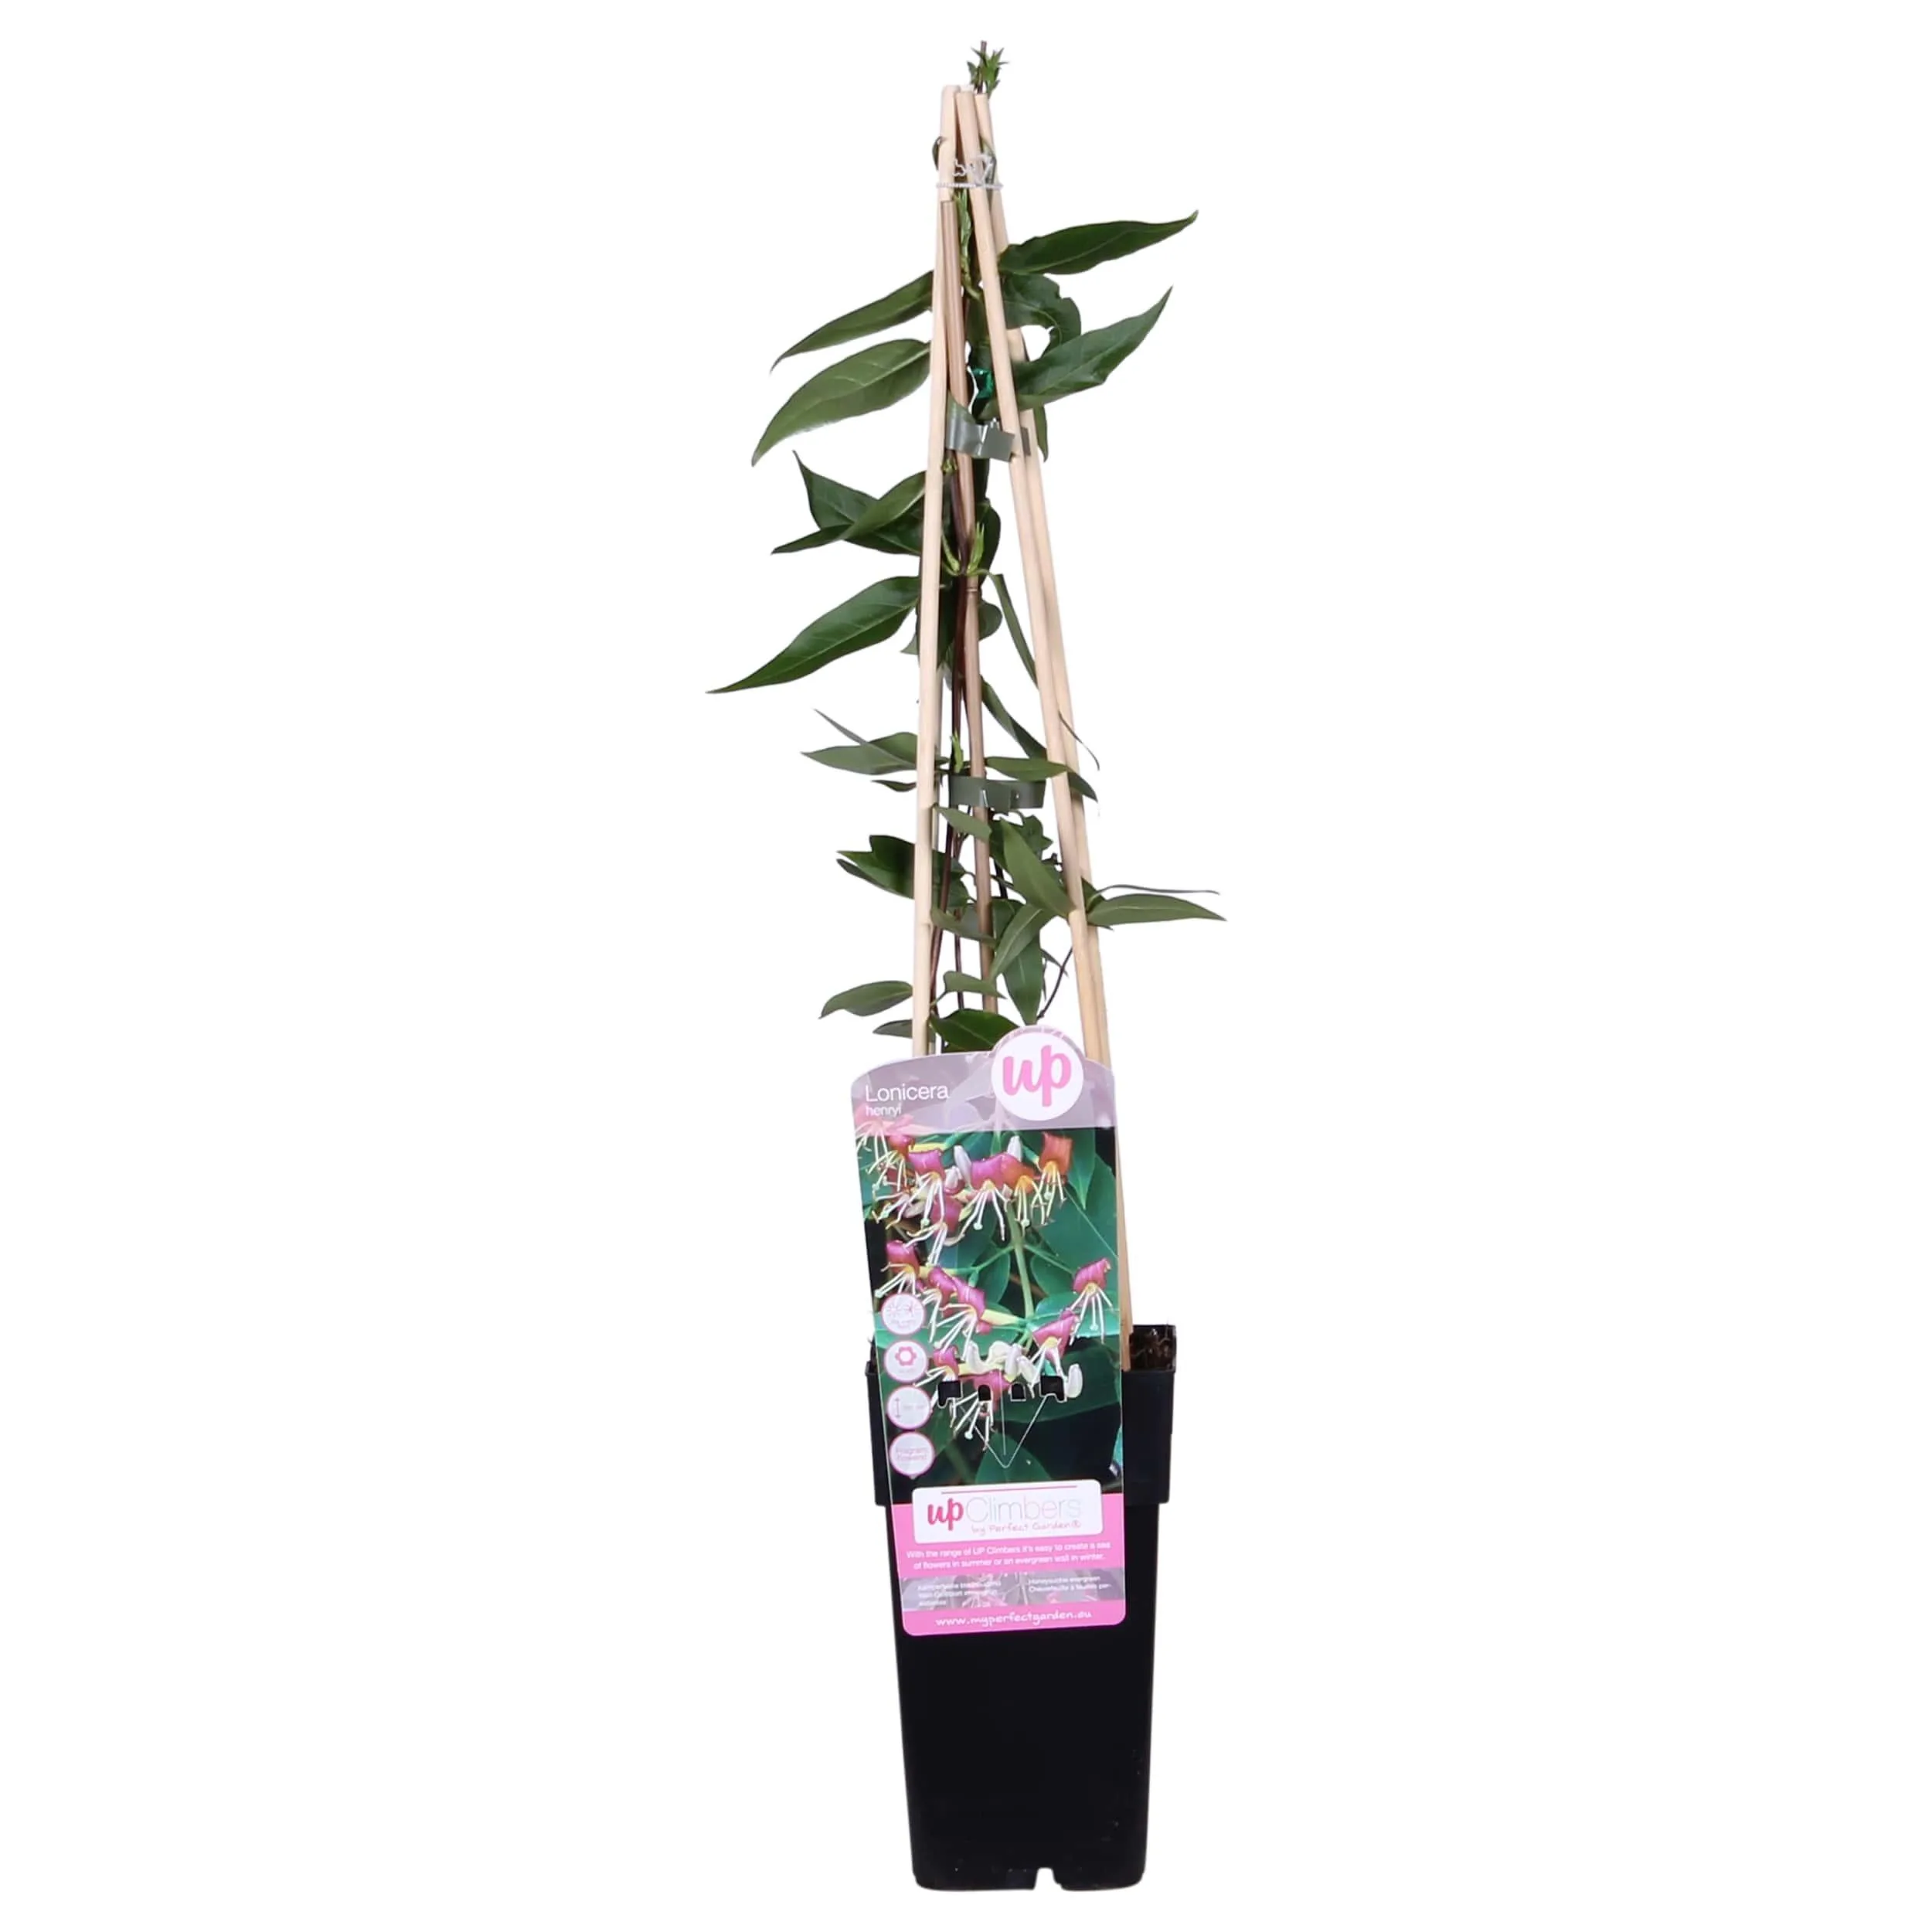 Lonicera Henryi (Kamperfoelie plant) - P 15 cm